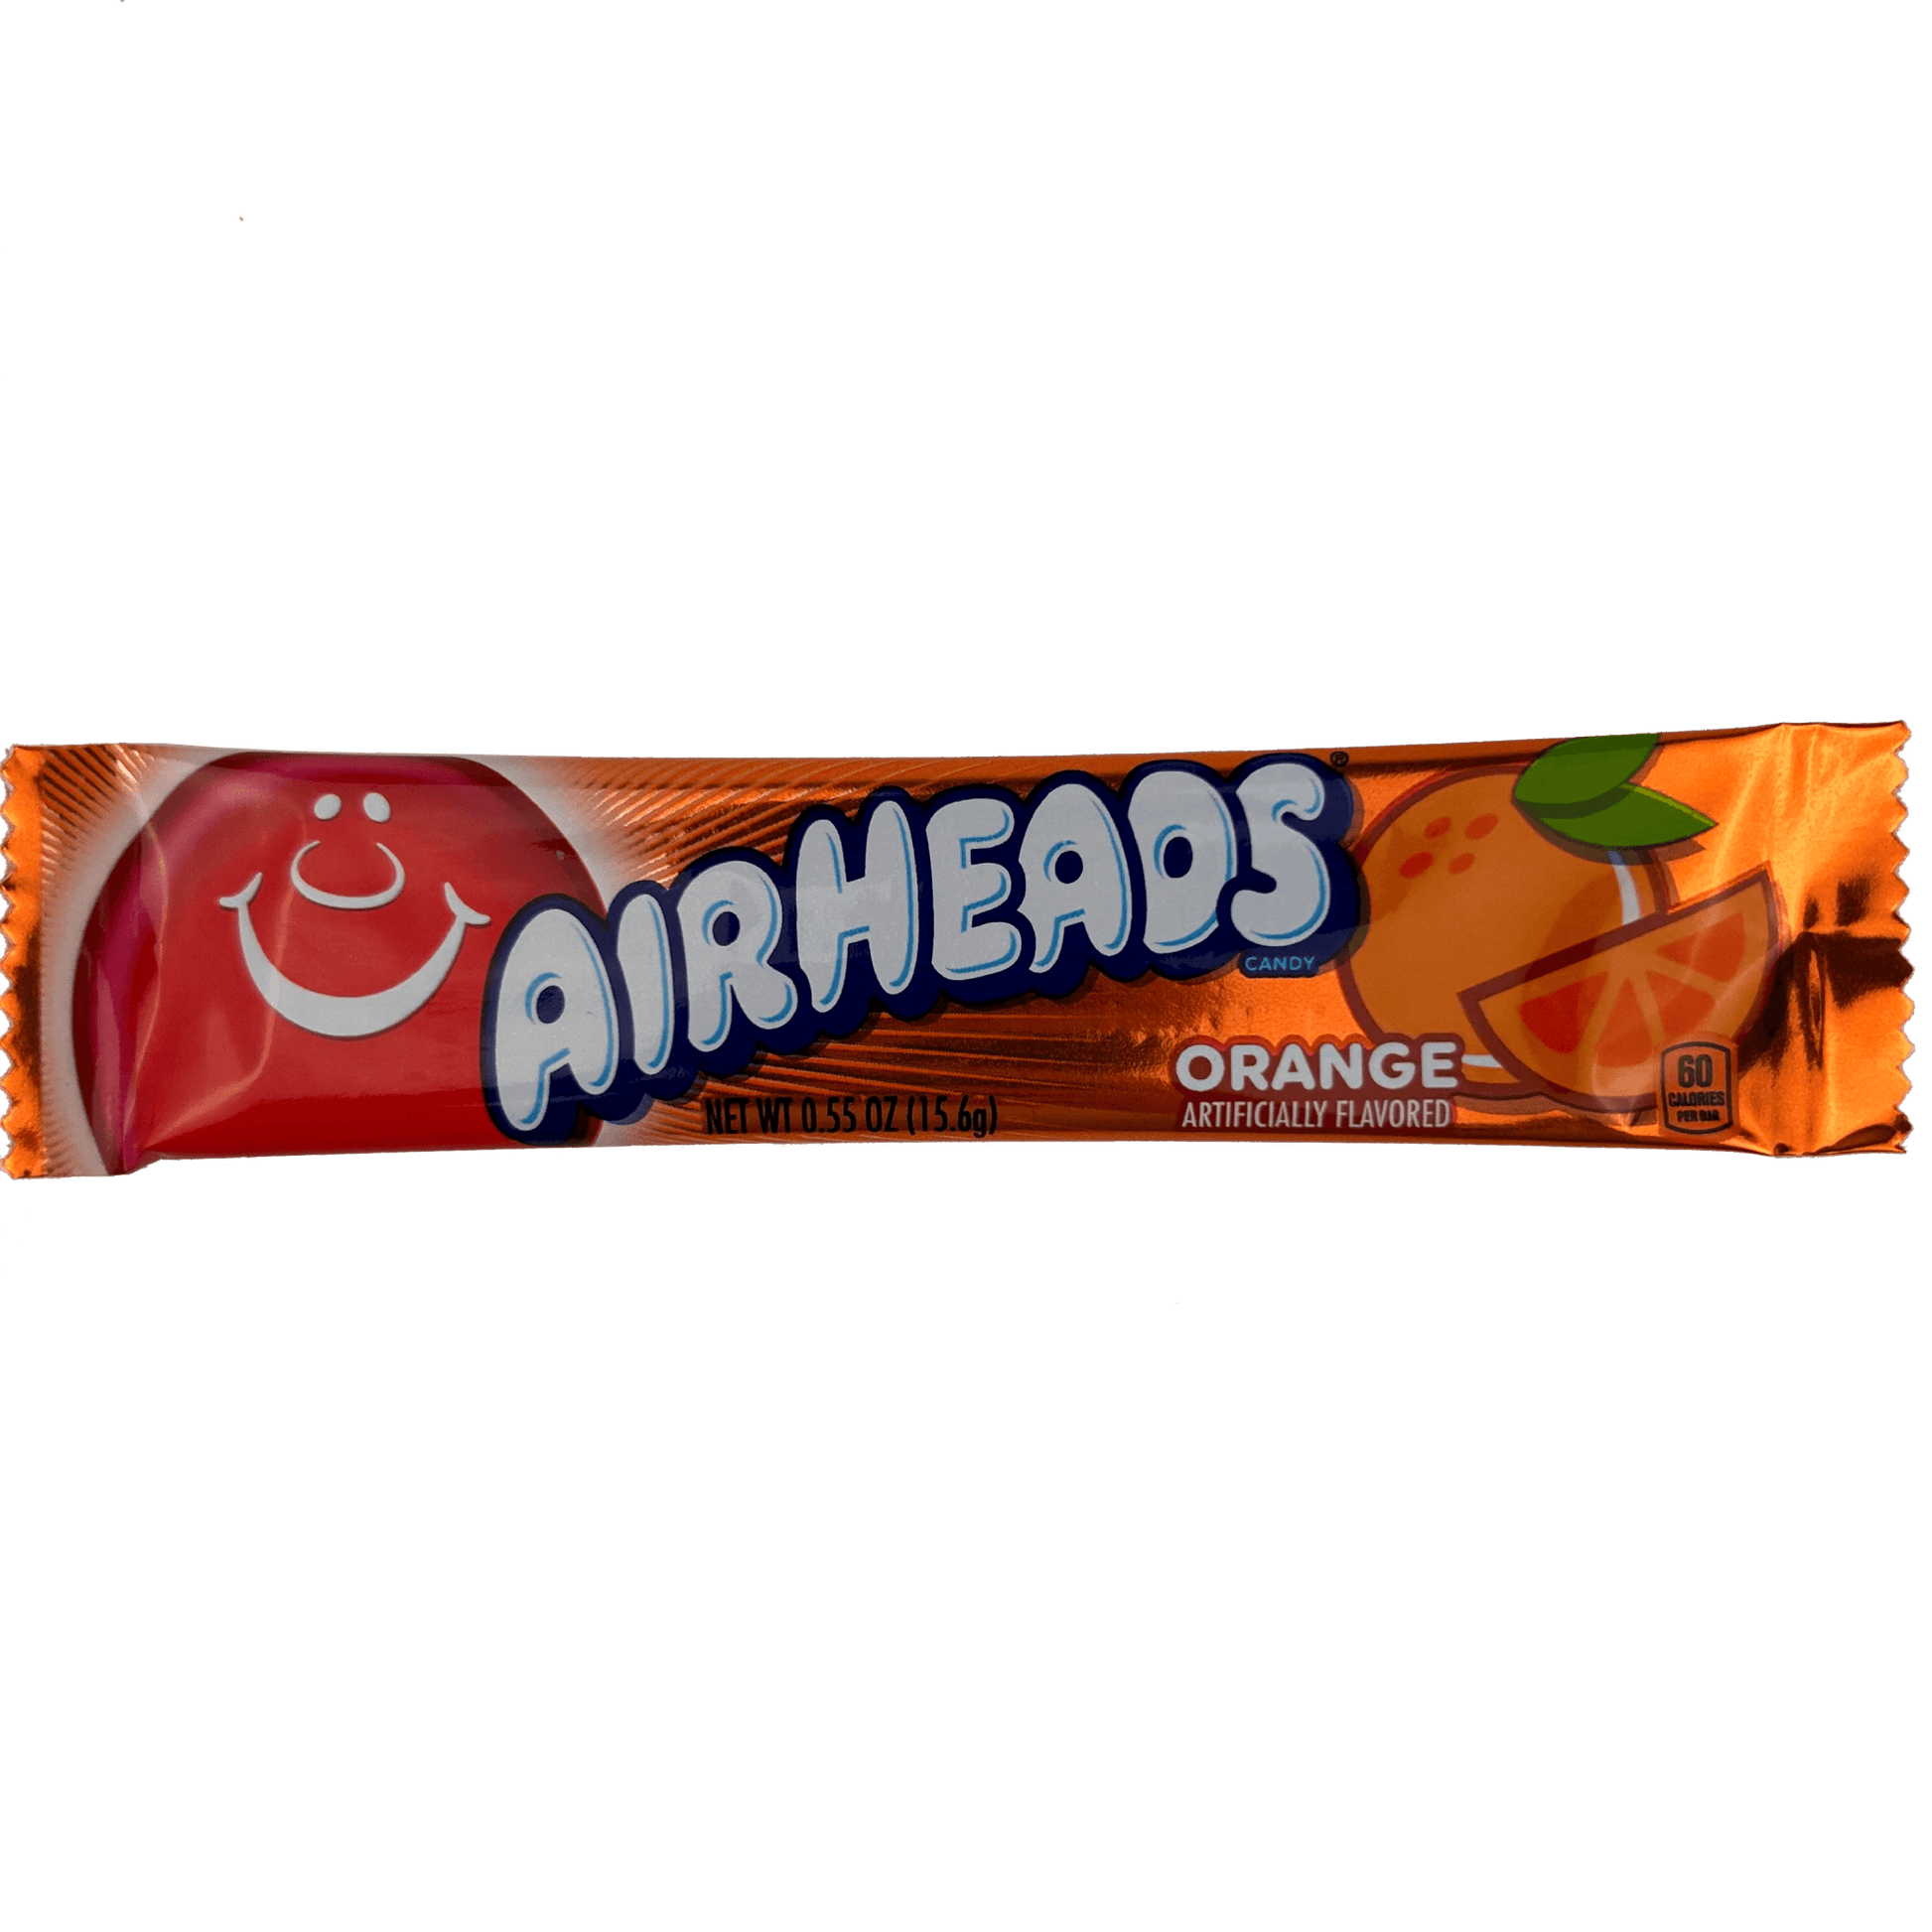 Airheads Orange